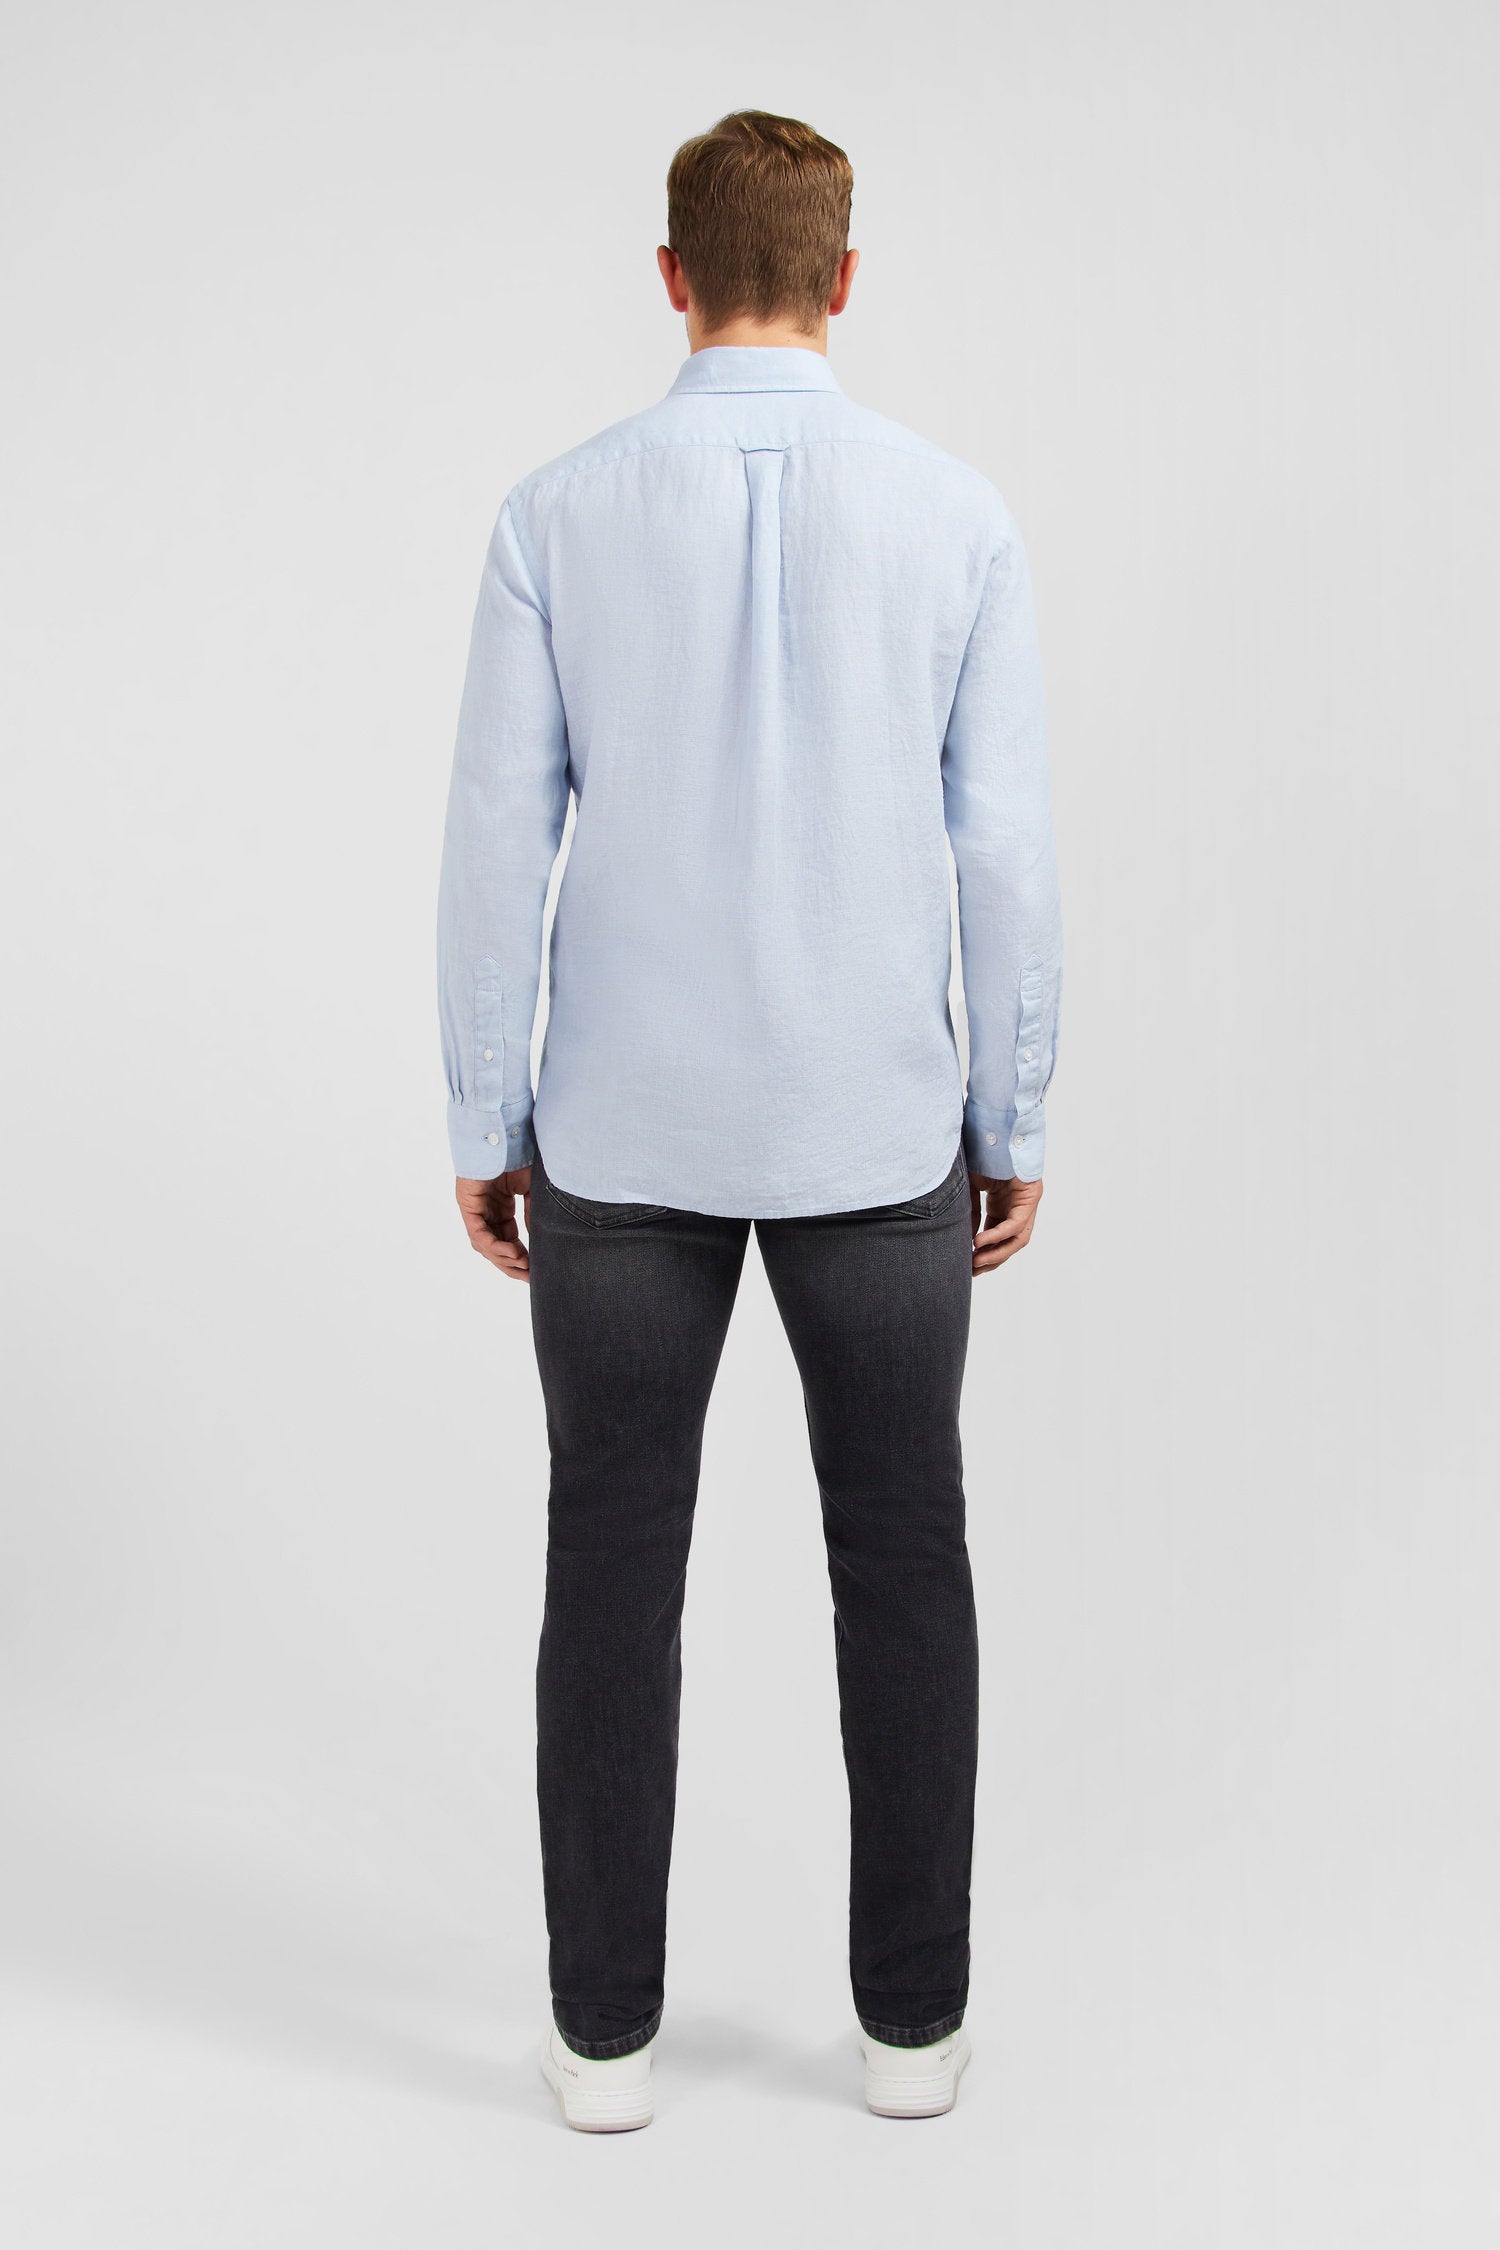 Plain Light Blue Shirt In Linen_E24CHECL0005_BLC6_03